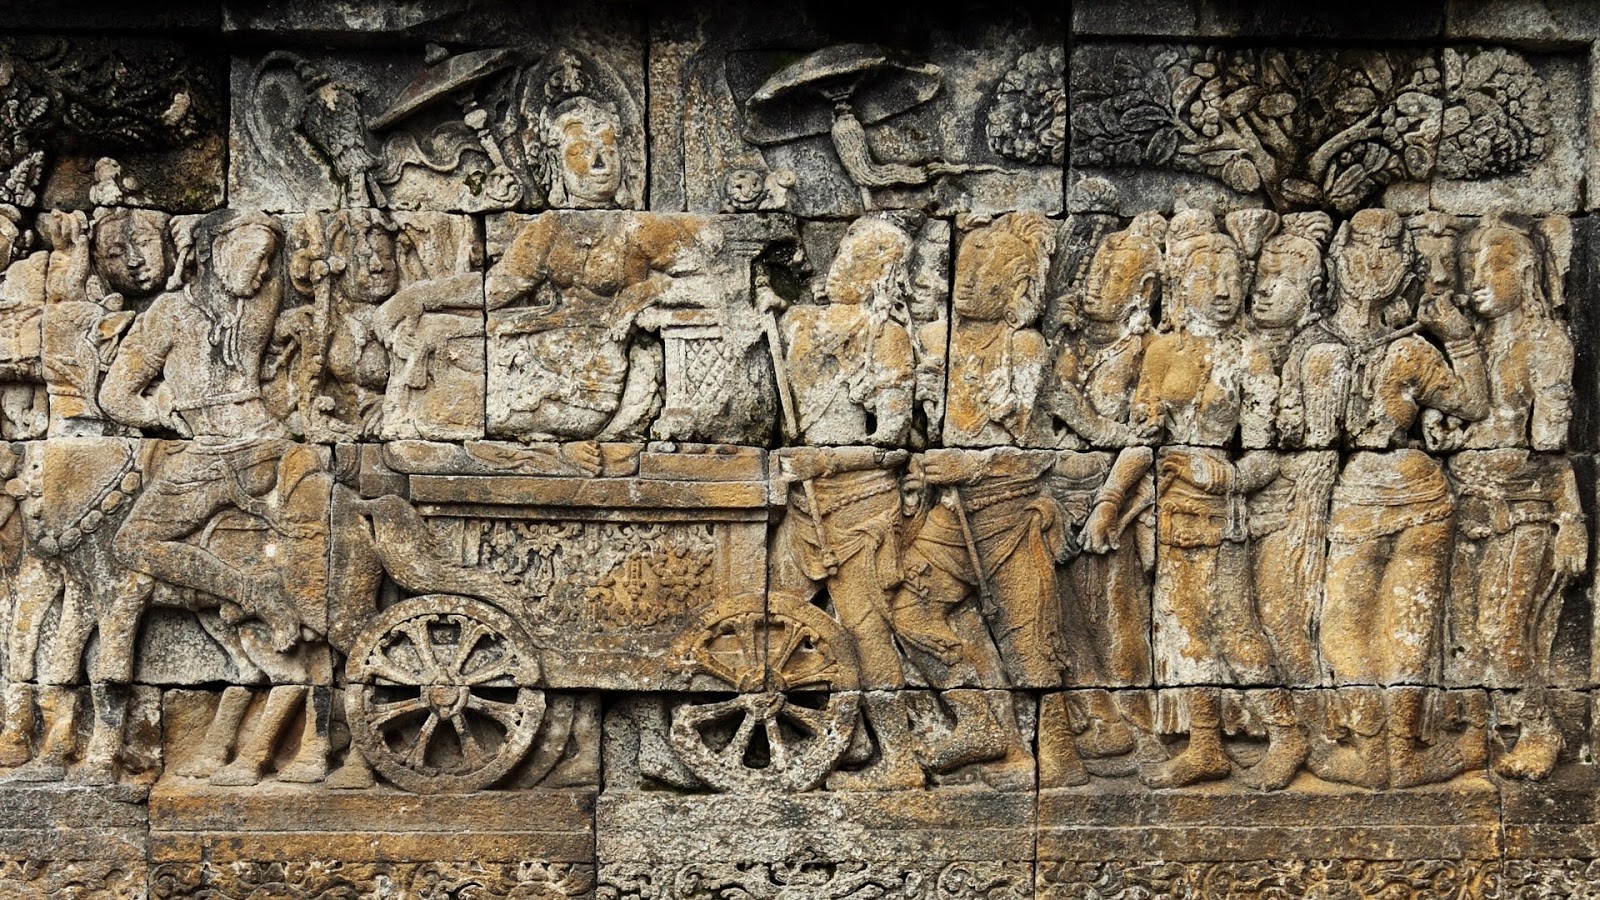 Wisata Tempat Bersejarah Candi Borobudur Menakjubkan Diusung Sungai Elo Progo